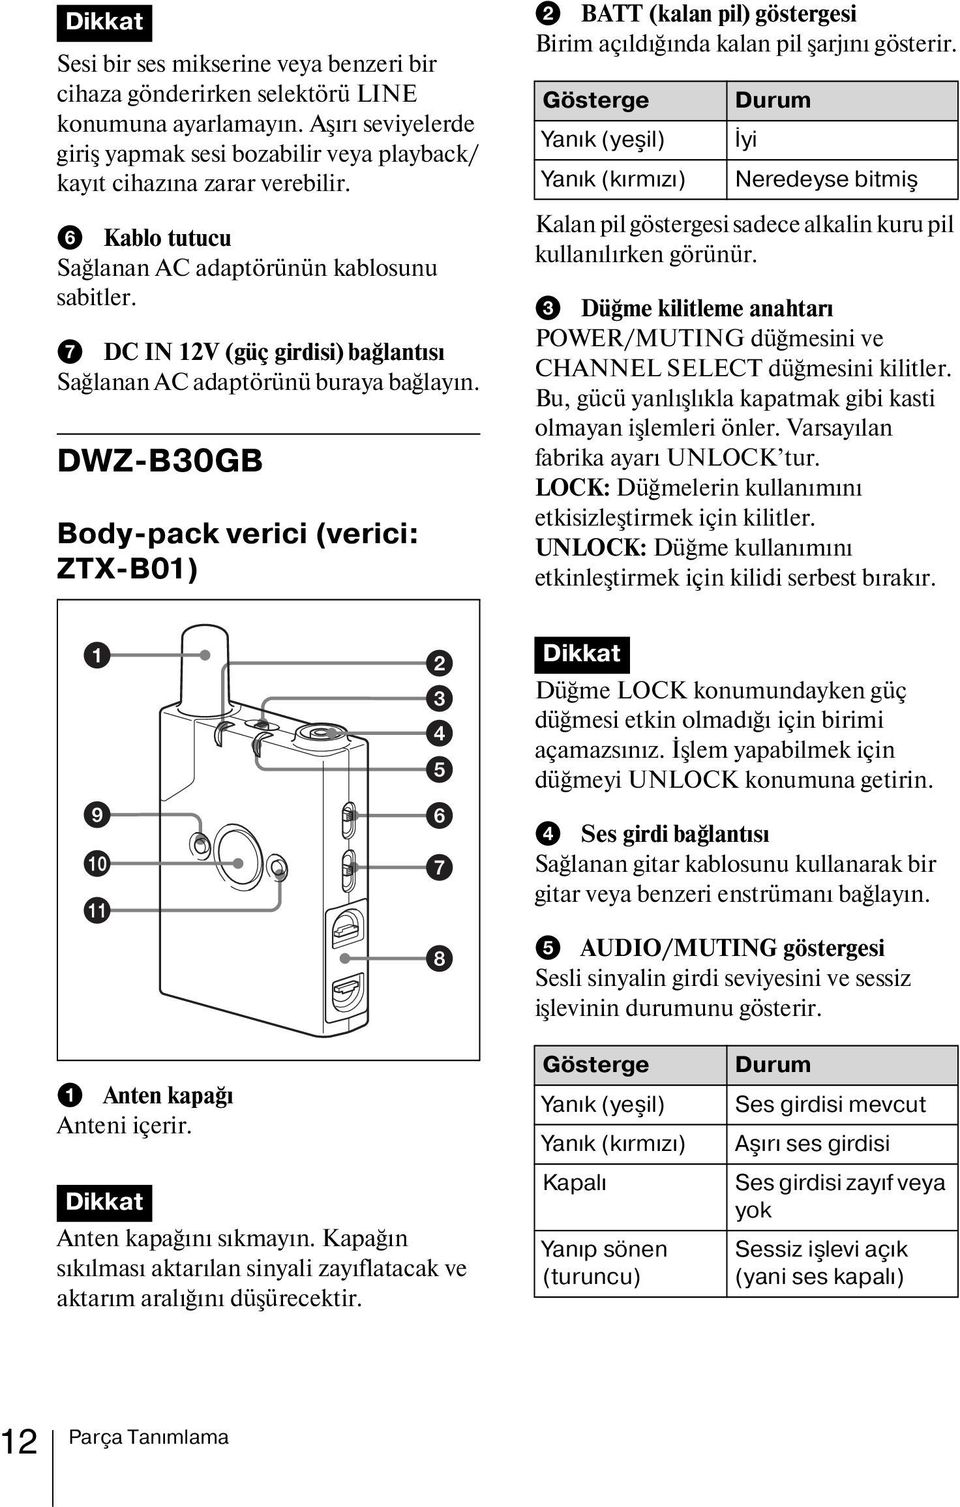 DWZ-B30GB Body-pack verici (verici: ZTX-B01) b BATT (kalan pil) göstergesi Birim açıldığında kalan pil şarjını gösterir.